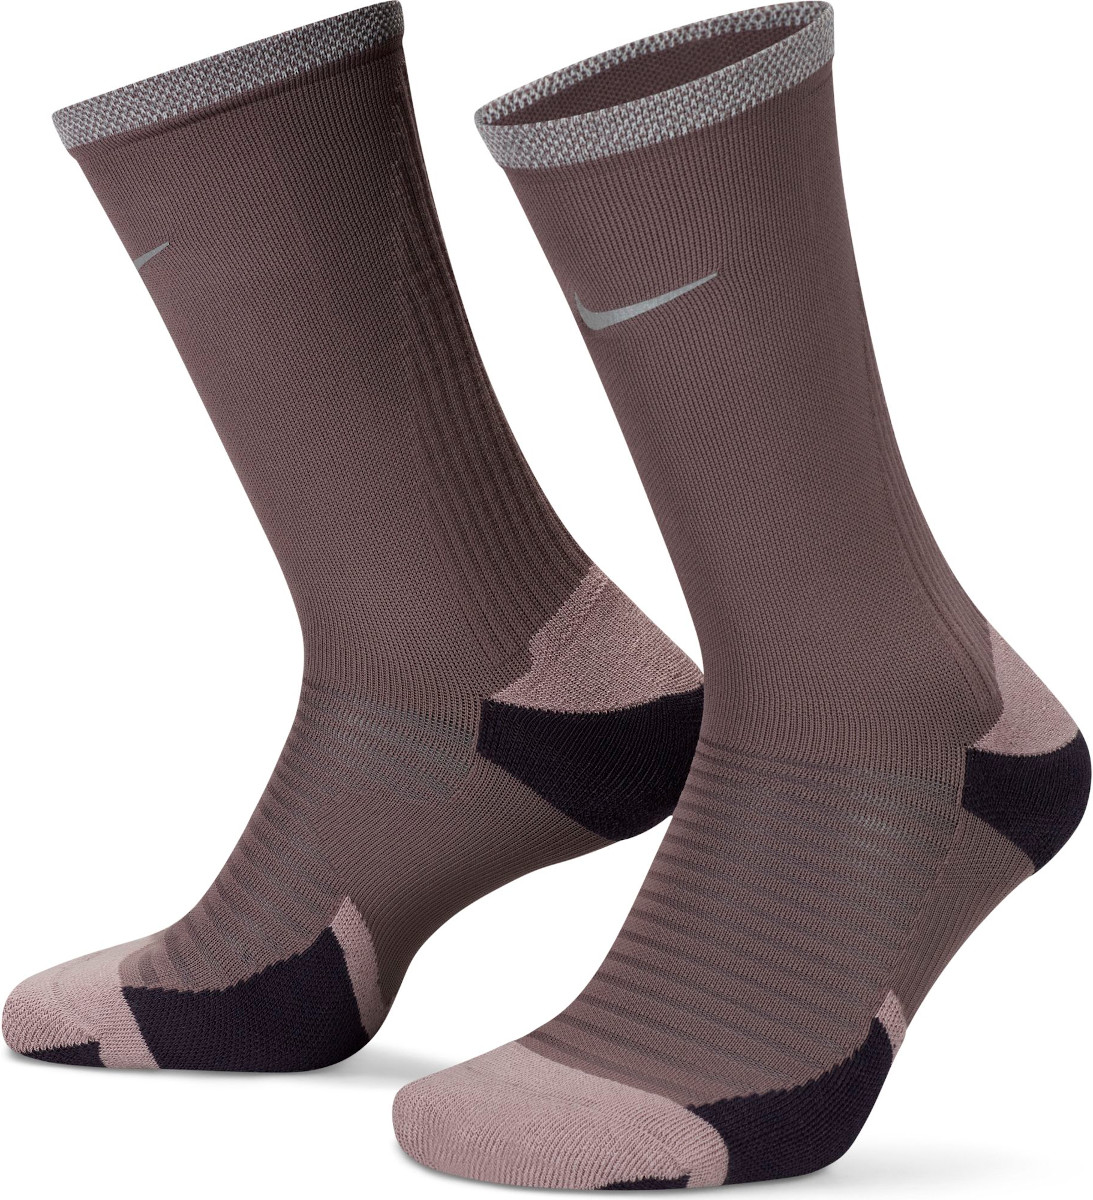 Středně vysoké běžecké ponožky s vycpávkami Nike Spark